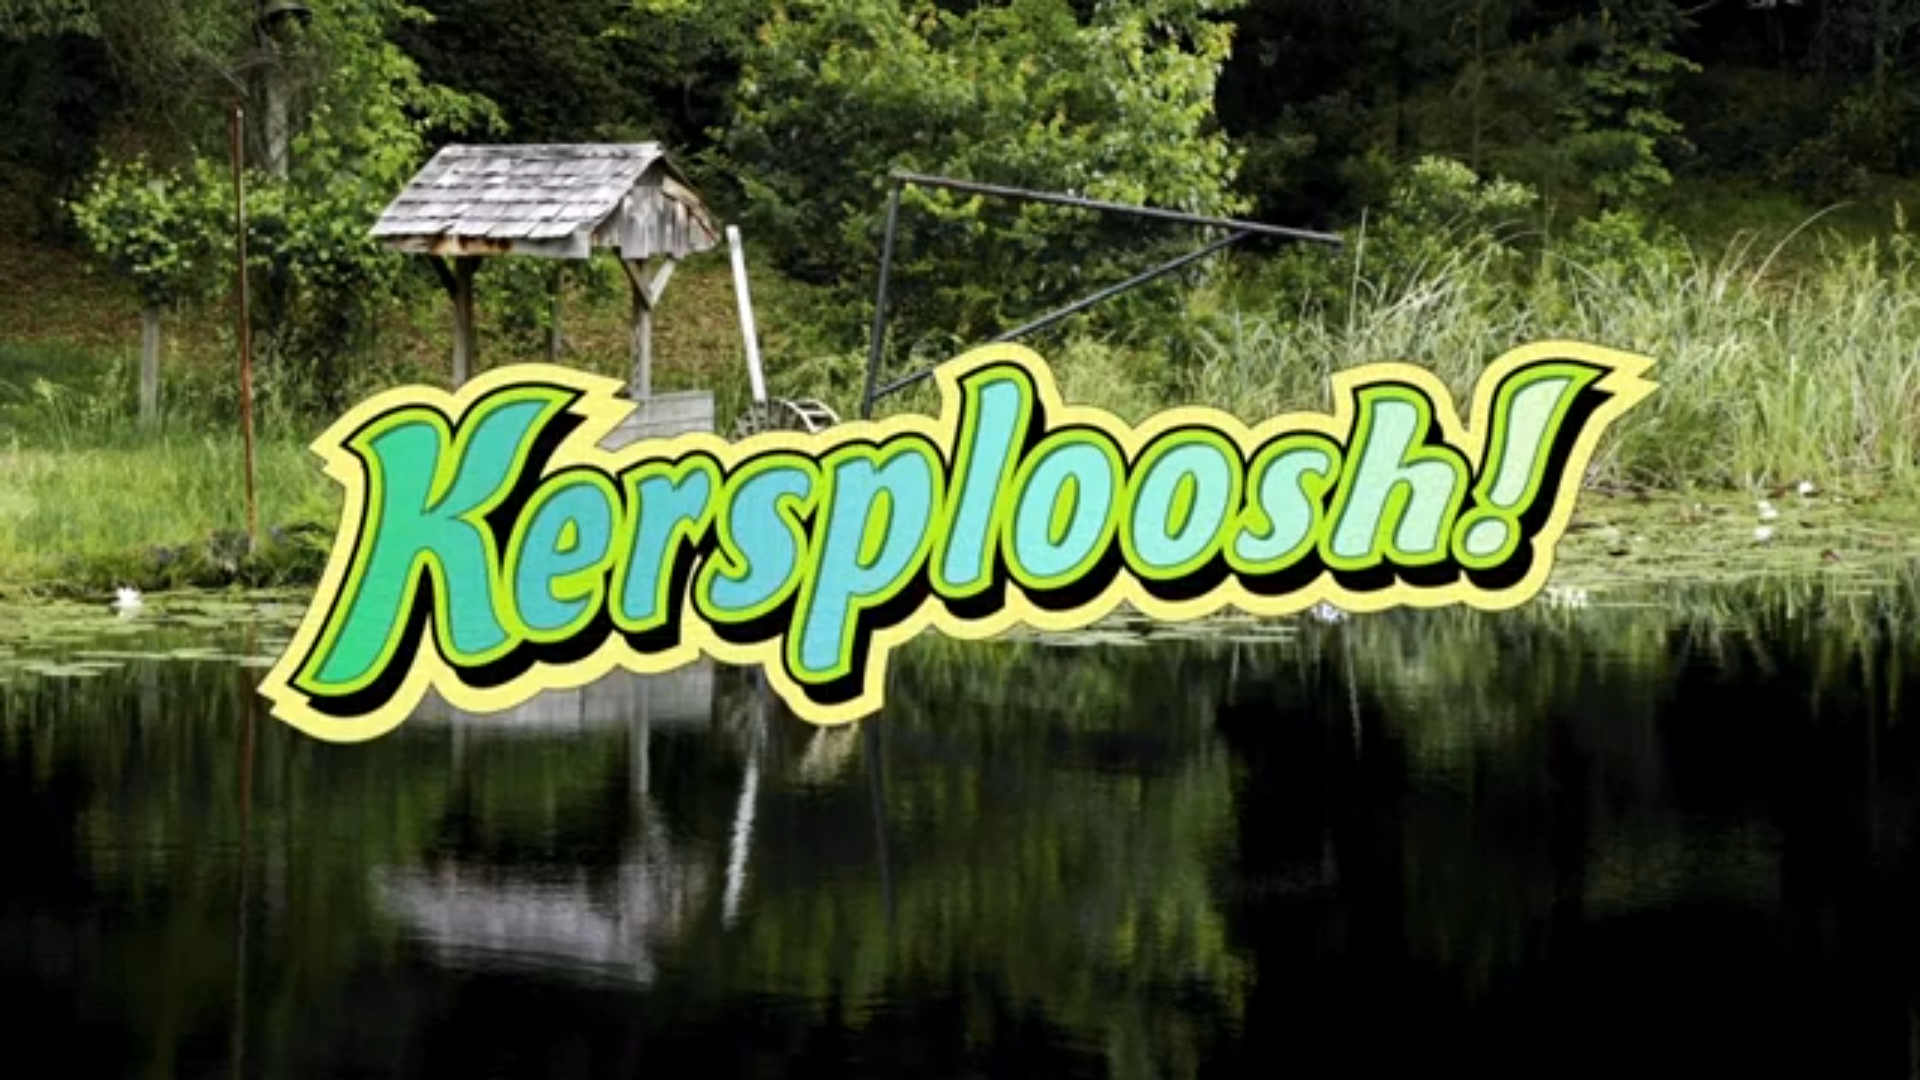 PN Review: Kersploosh! (3DS)